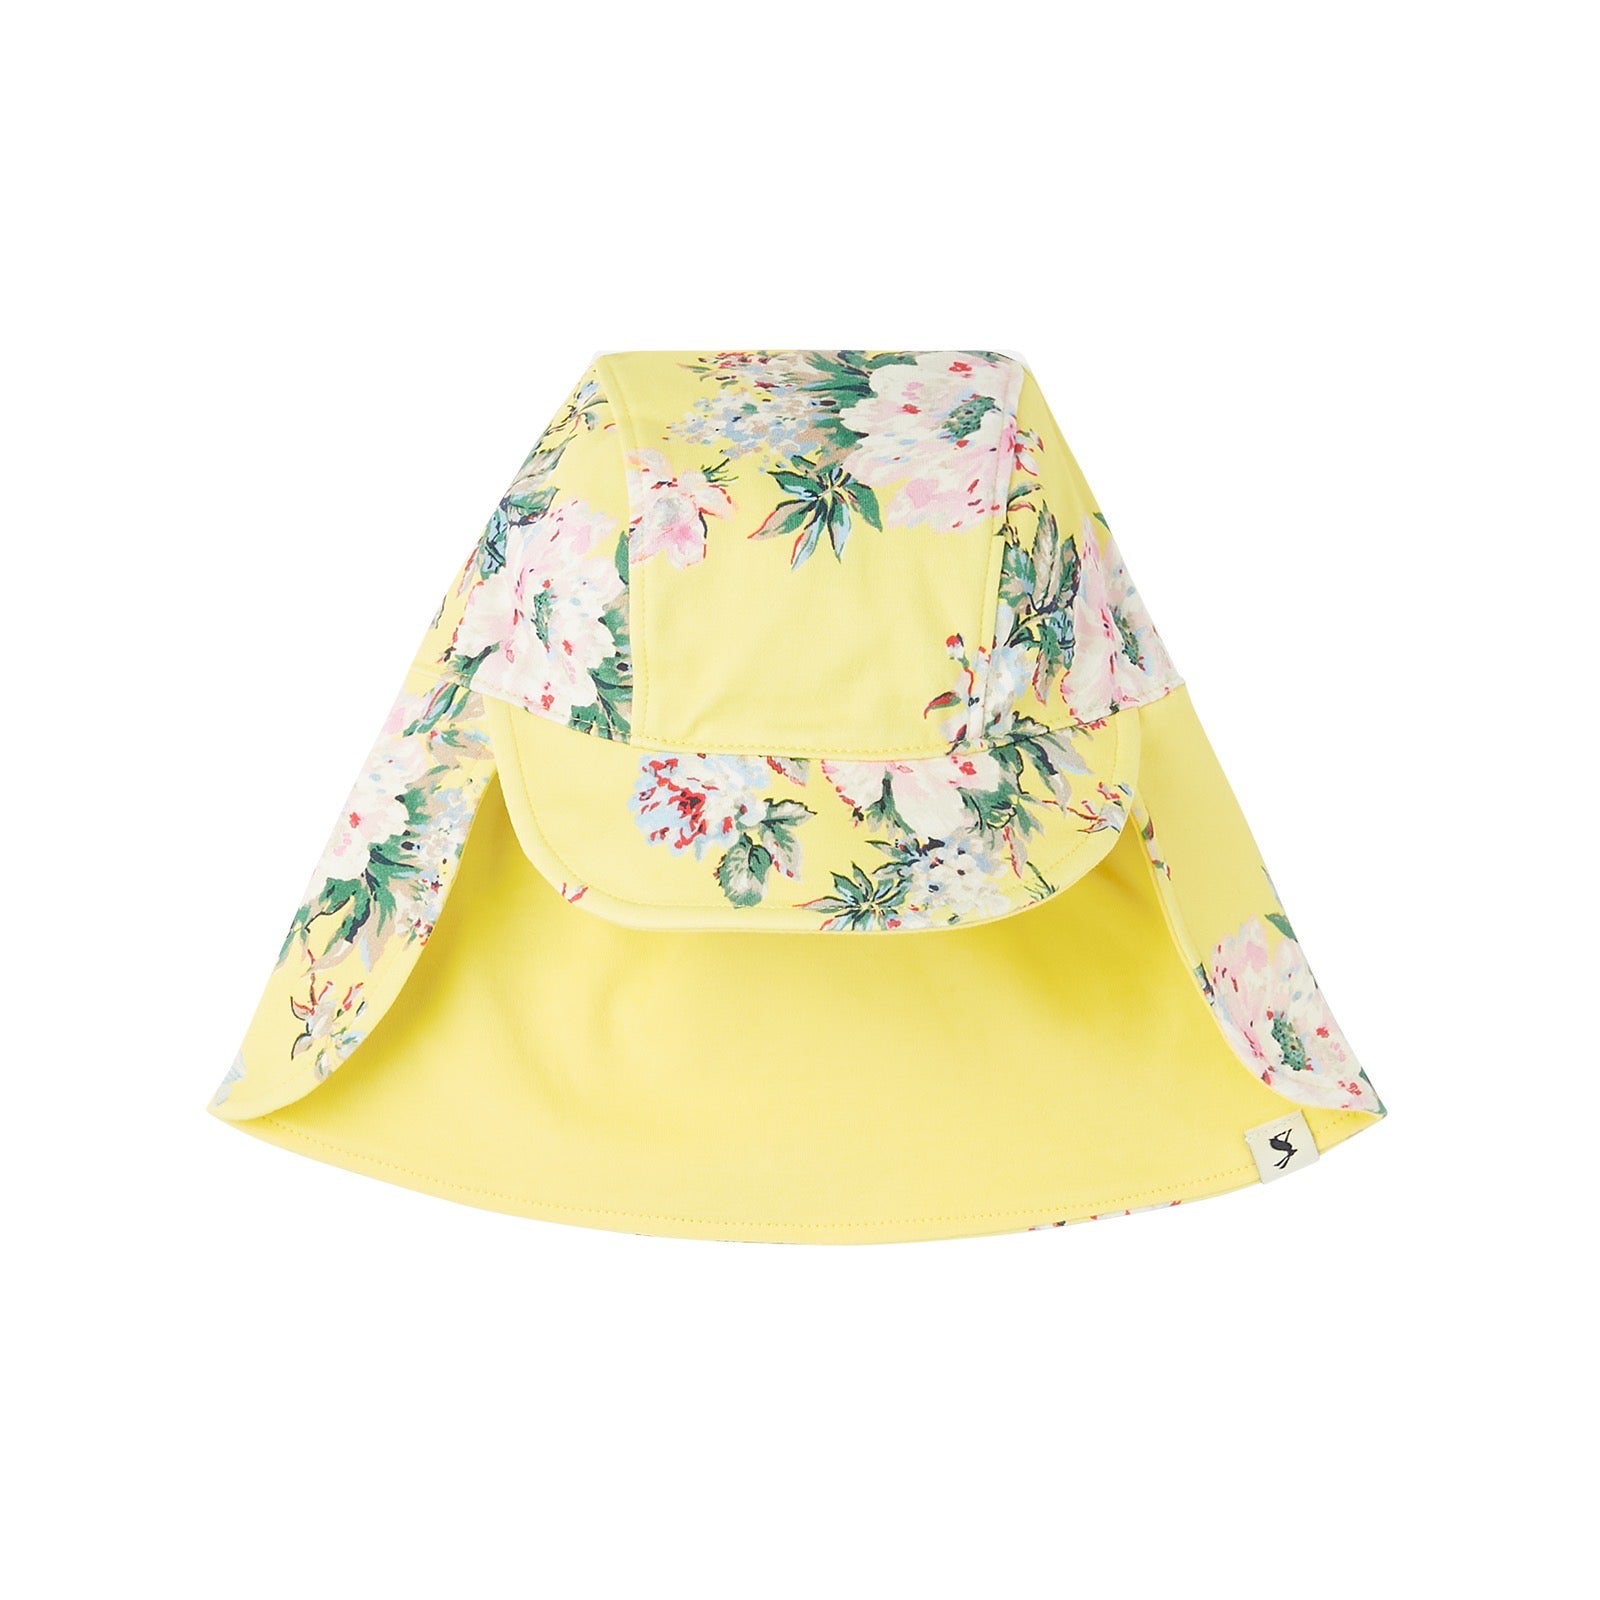 Joules Sonny Legionaire Sun Hat 216256 Floral Clothing 0-6M / Yellow,6-12M / Yellow,1-2YRS / Yellow,2-4YRS / Yellow